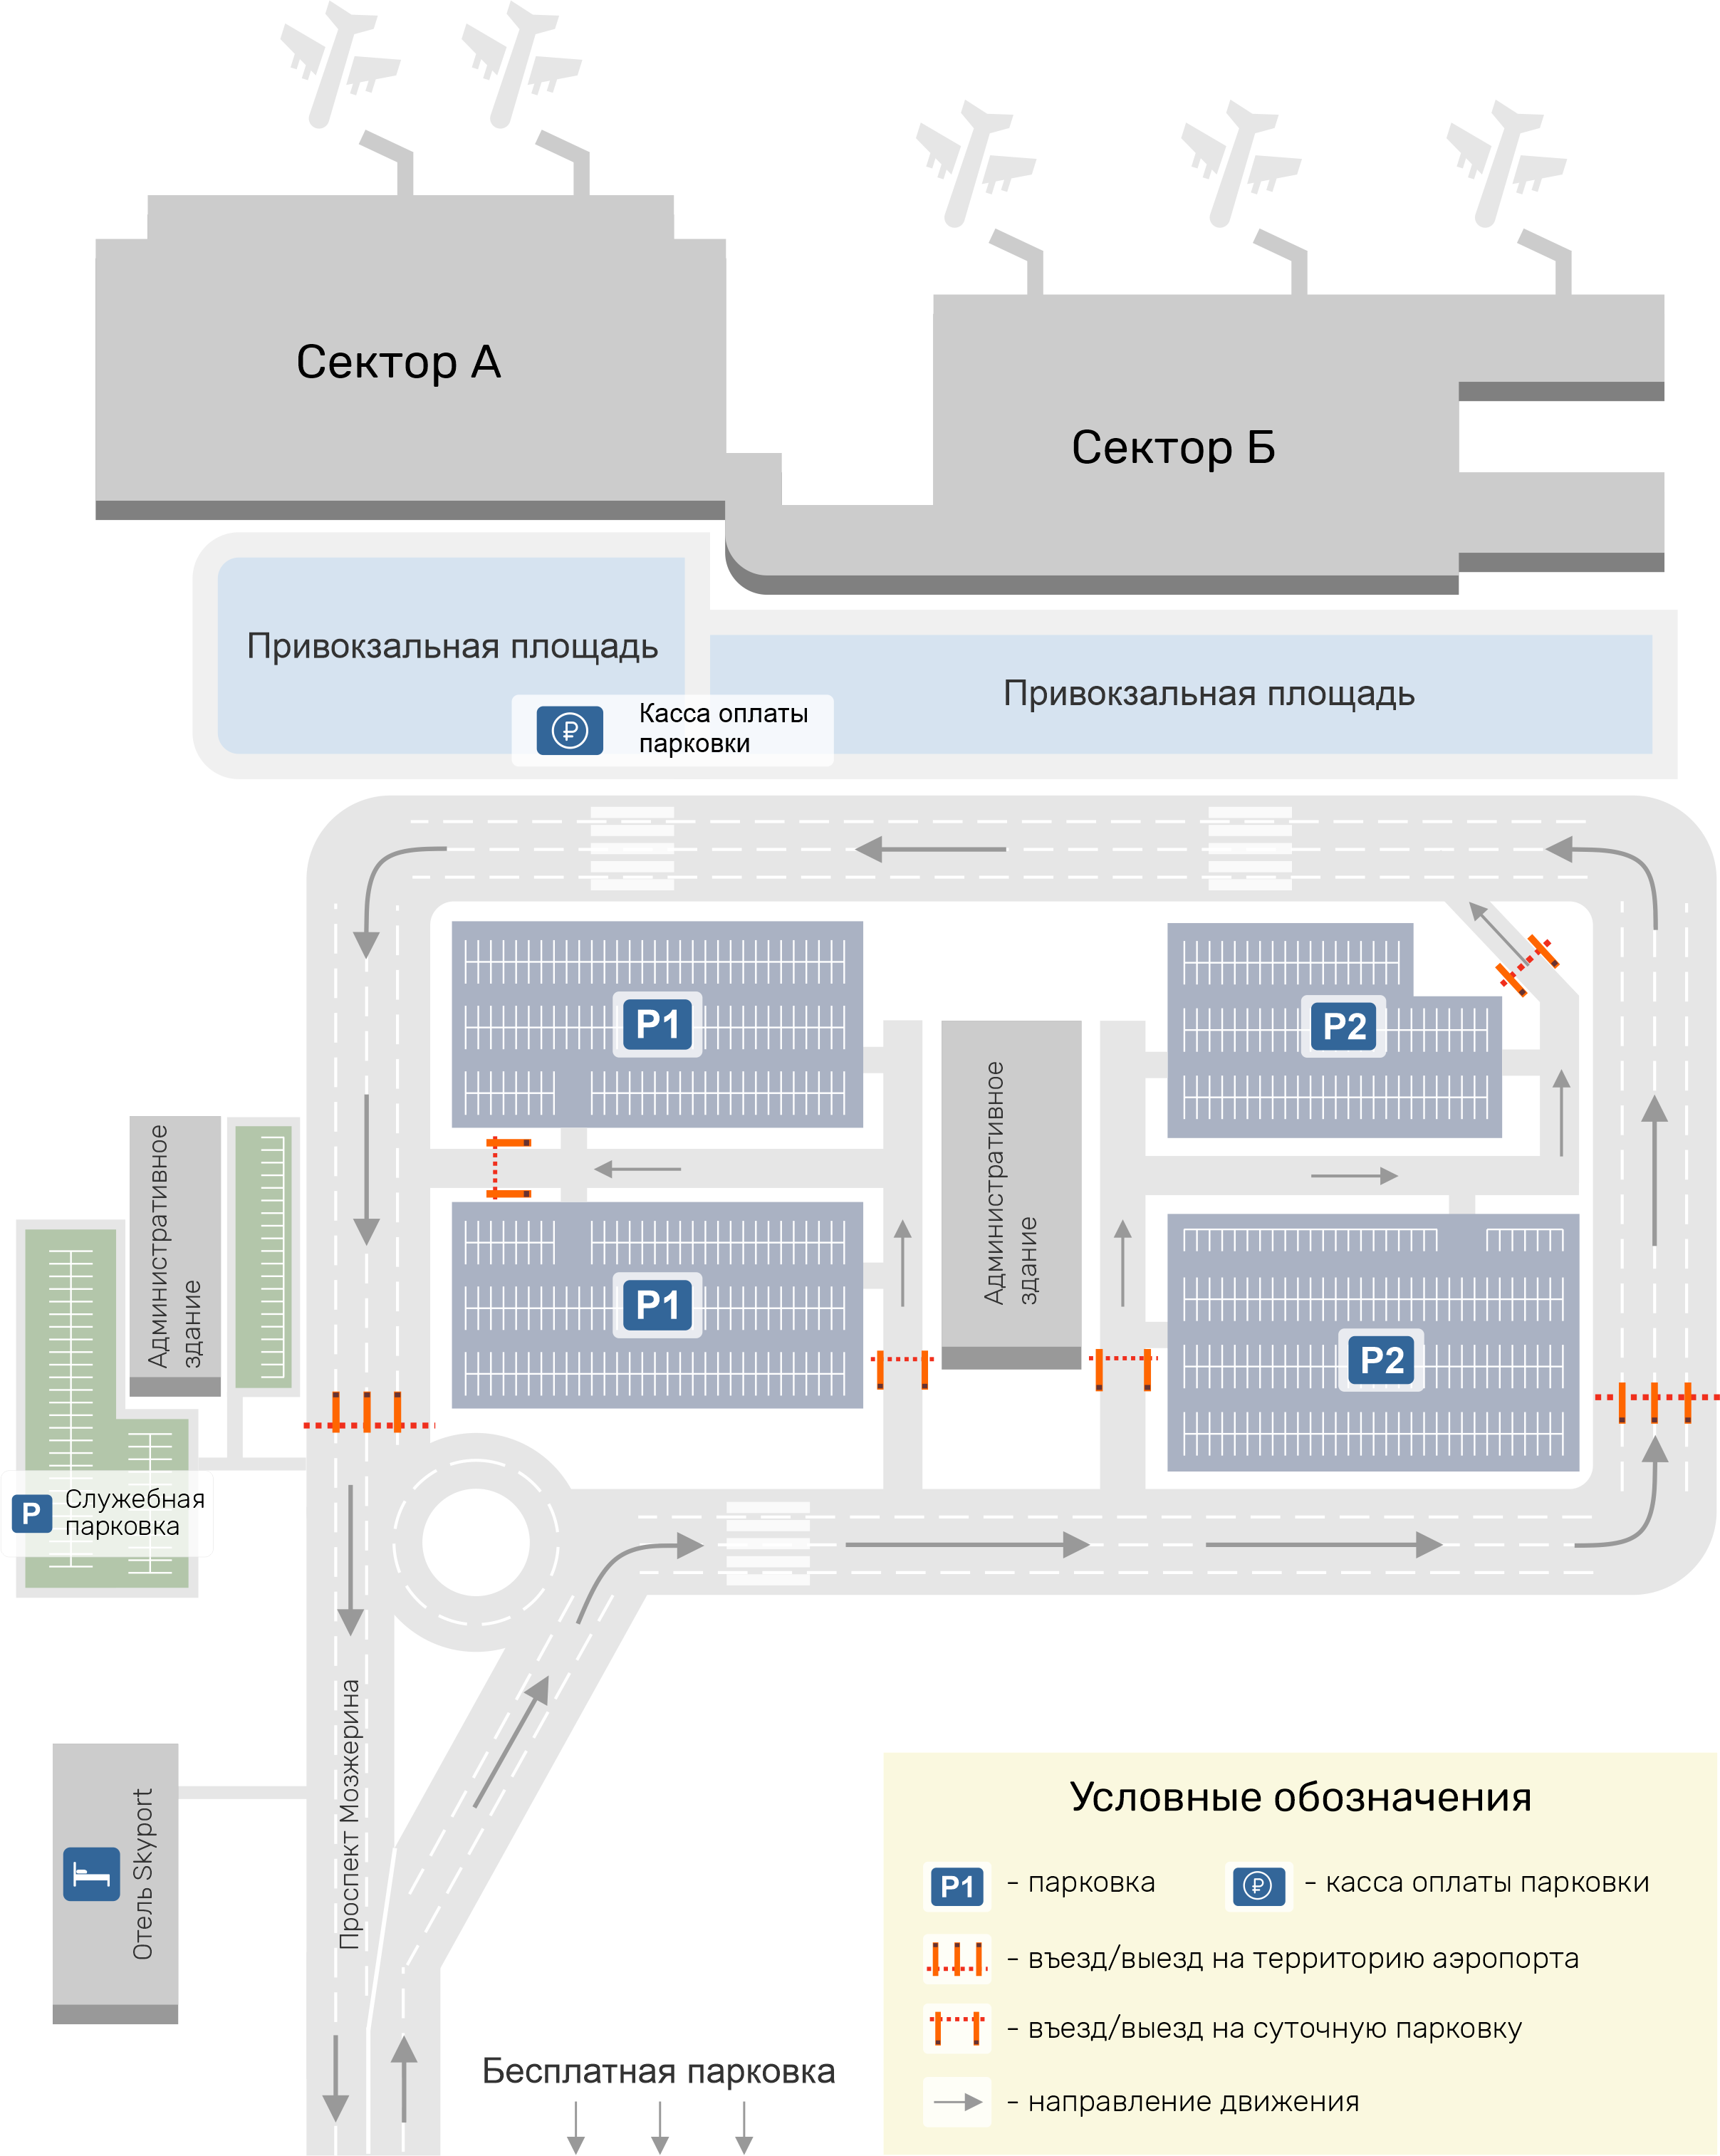 Аэропорт толмачево: инфраструктура и предоставляемые услуги